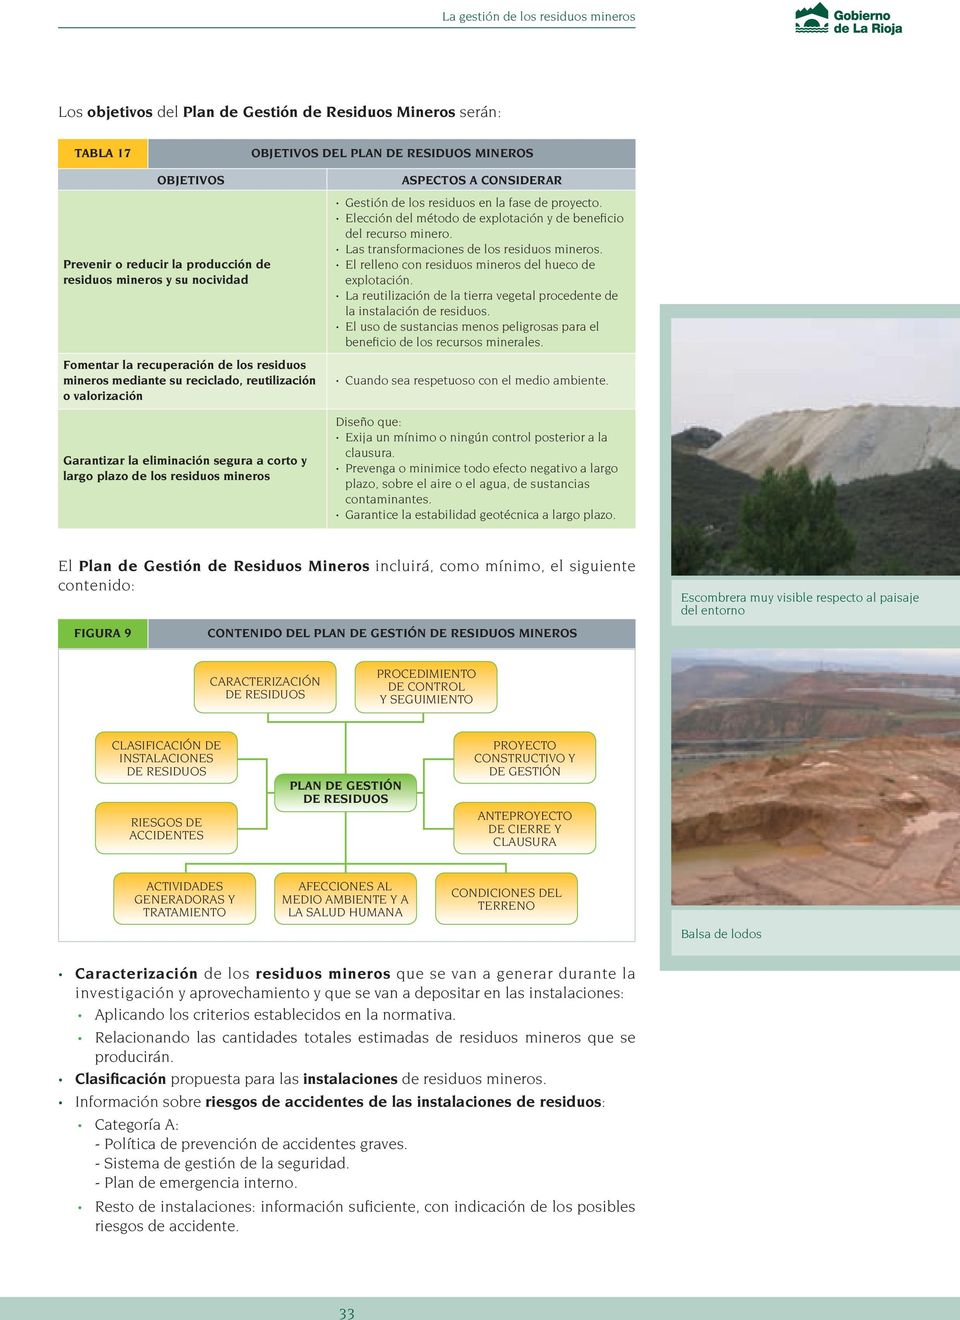 mineros ASPECTOS A CONSIDERAR Gestión de los residuos en la fase de proyecto. Elección del método de explotación y de beneficio del recurso minero. Las transformaciones de los residuos mineros.